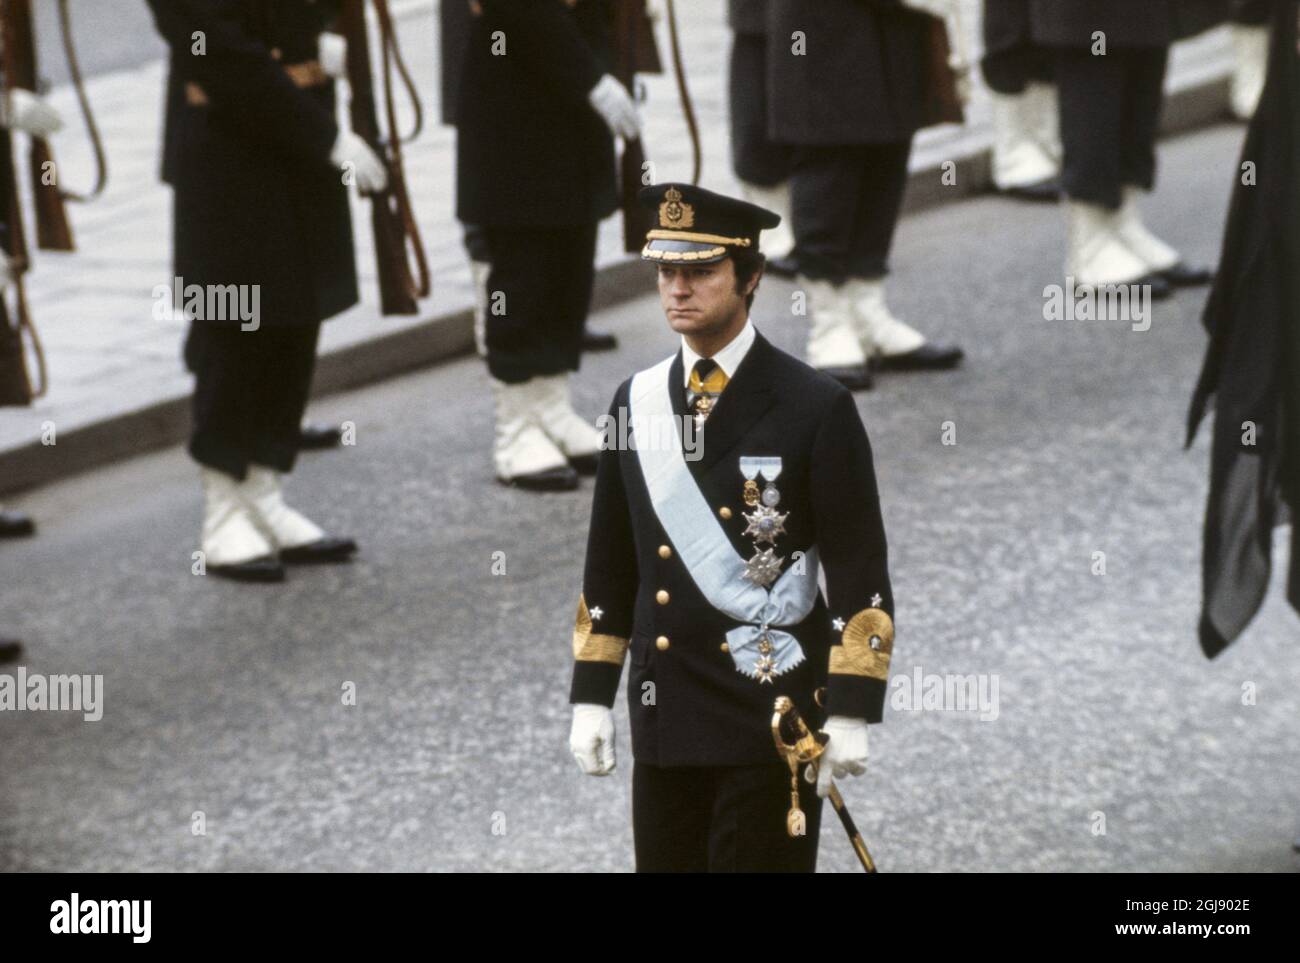 ARKIV STOCCOLMA 1972-12-07. Il principe ereditario Carl Gustaf è visto durante i funerali della principessa Sibylla a Stoccolma, Svezia, 7 dicembre 1972 Foto: SVT Bild / Kod: 5600 Foto Stock